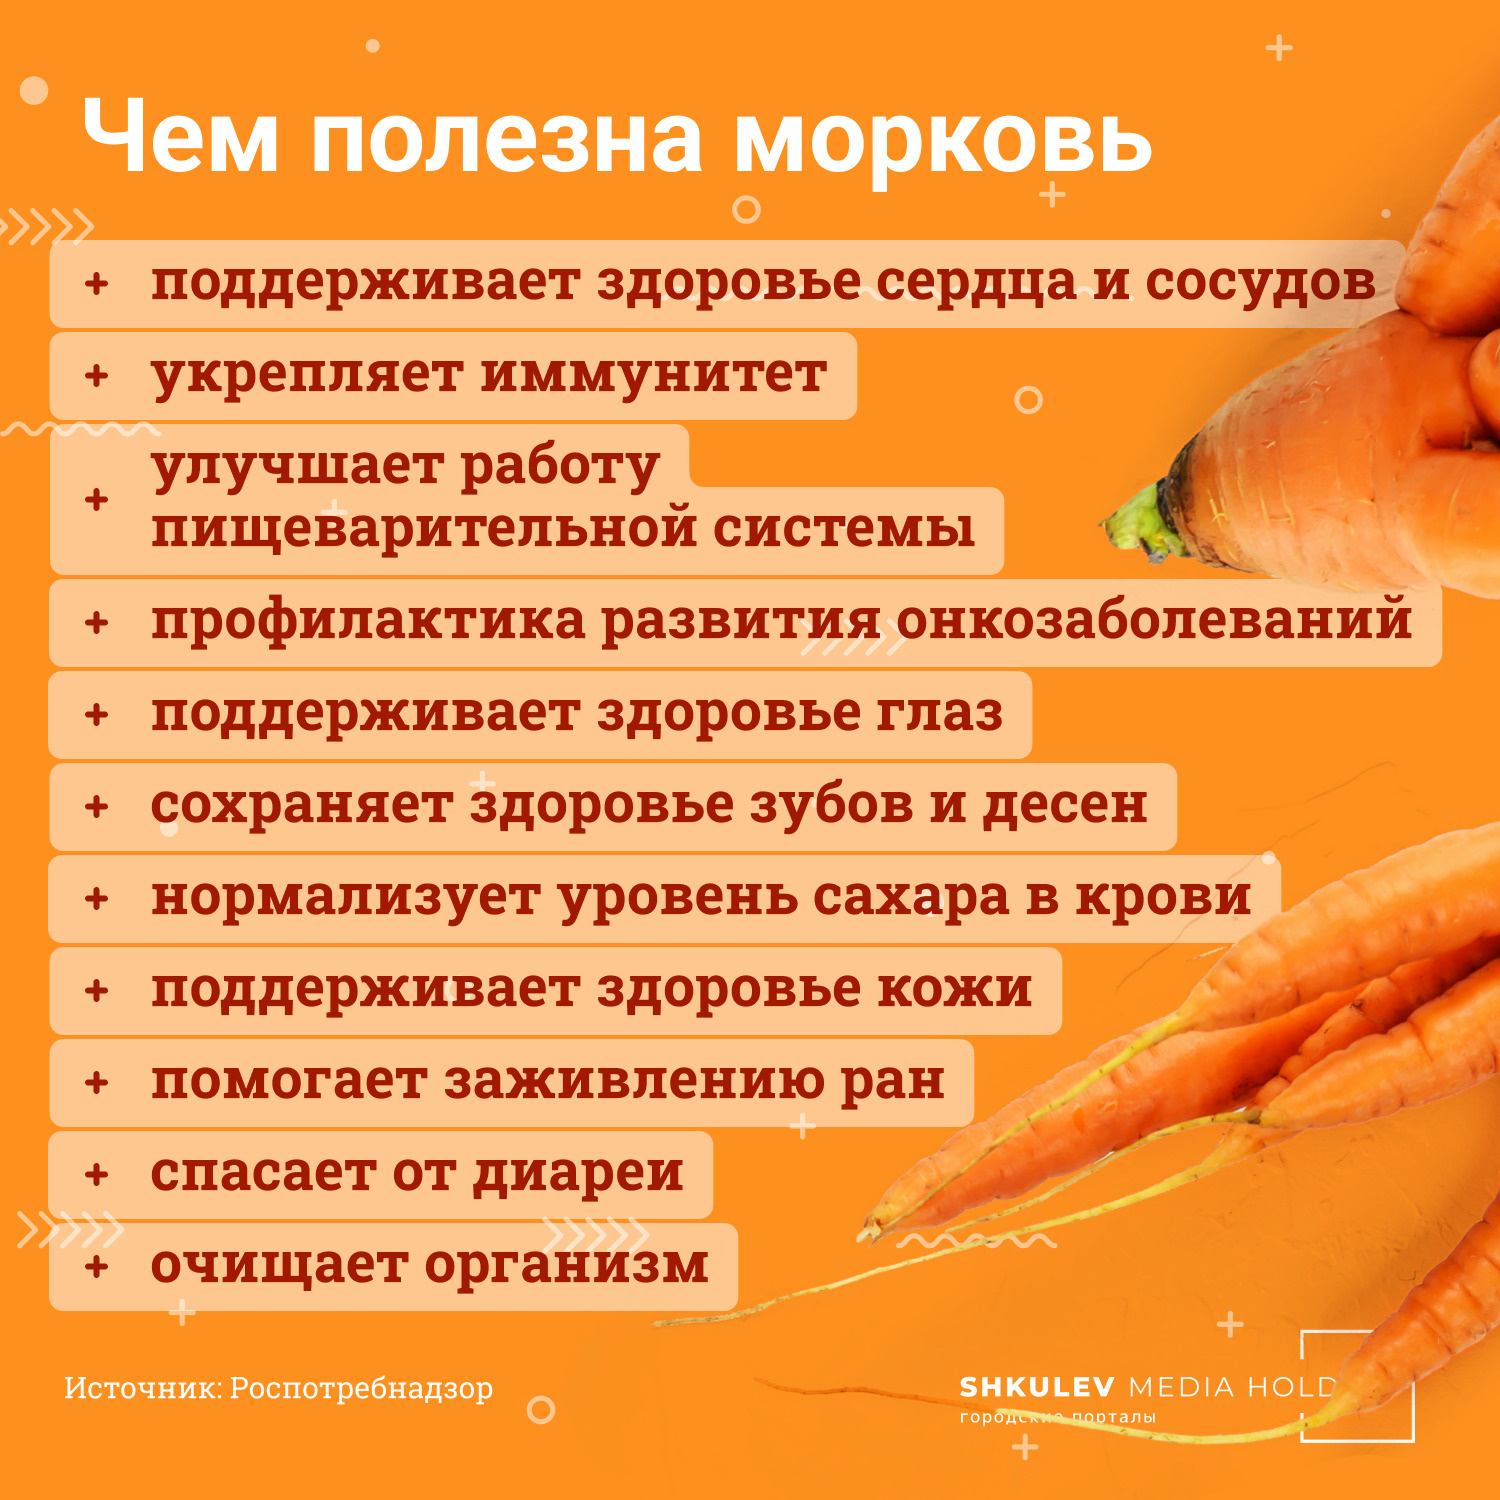 Морковь оказалась удивительно богата на полезные свойства